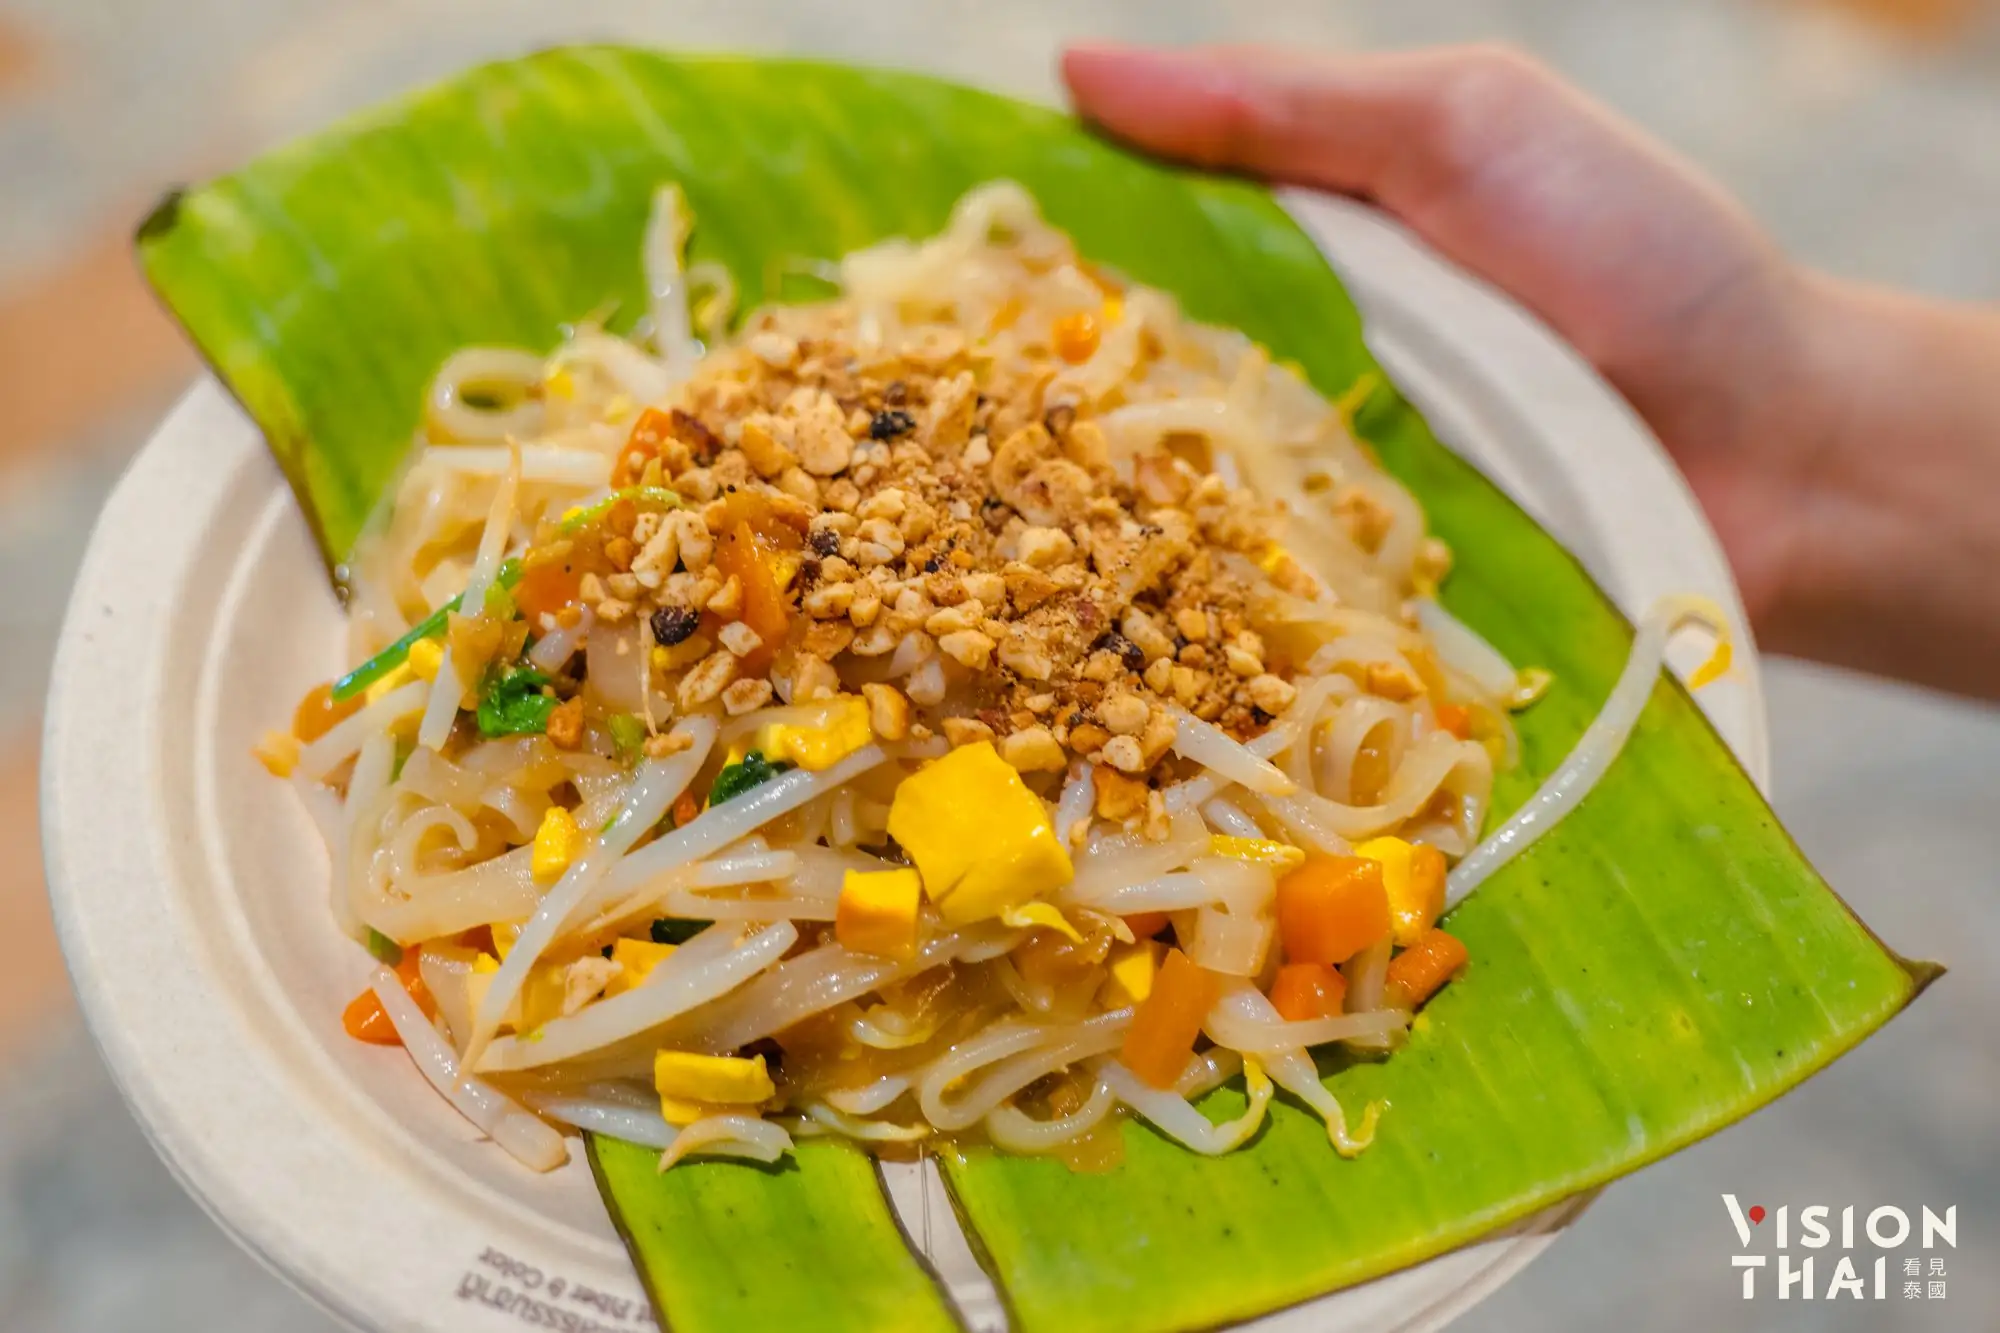 斋节期间暹罗天地ICONSIAM吃得到各式各样斋版的泰式小吃（图片来源：Vision Thai 看见泰国）